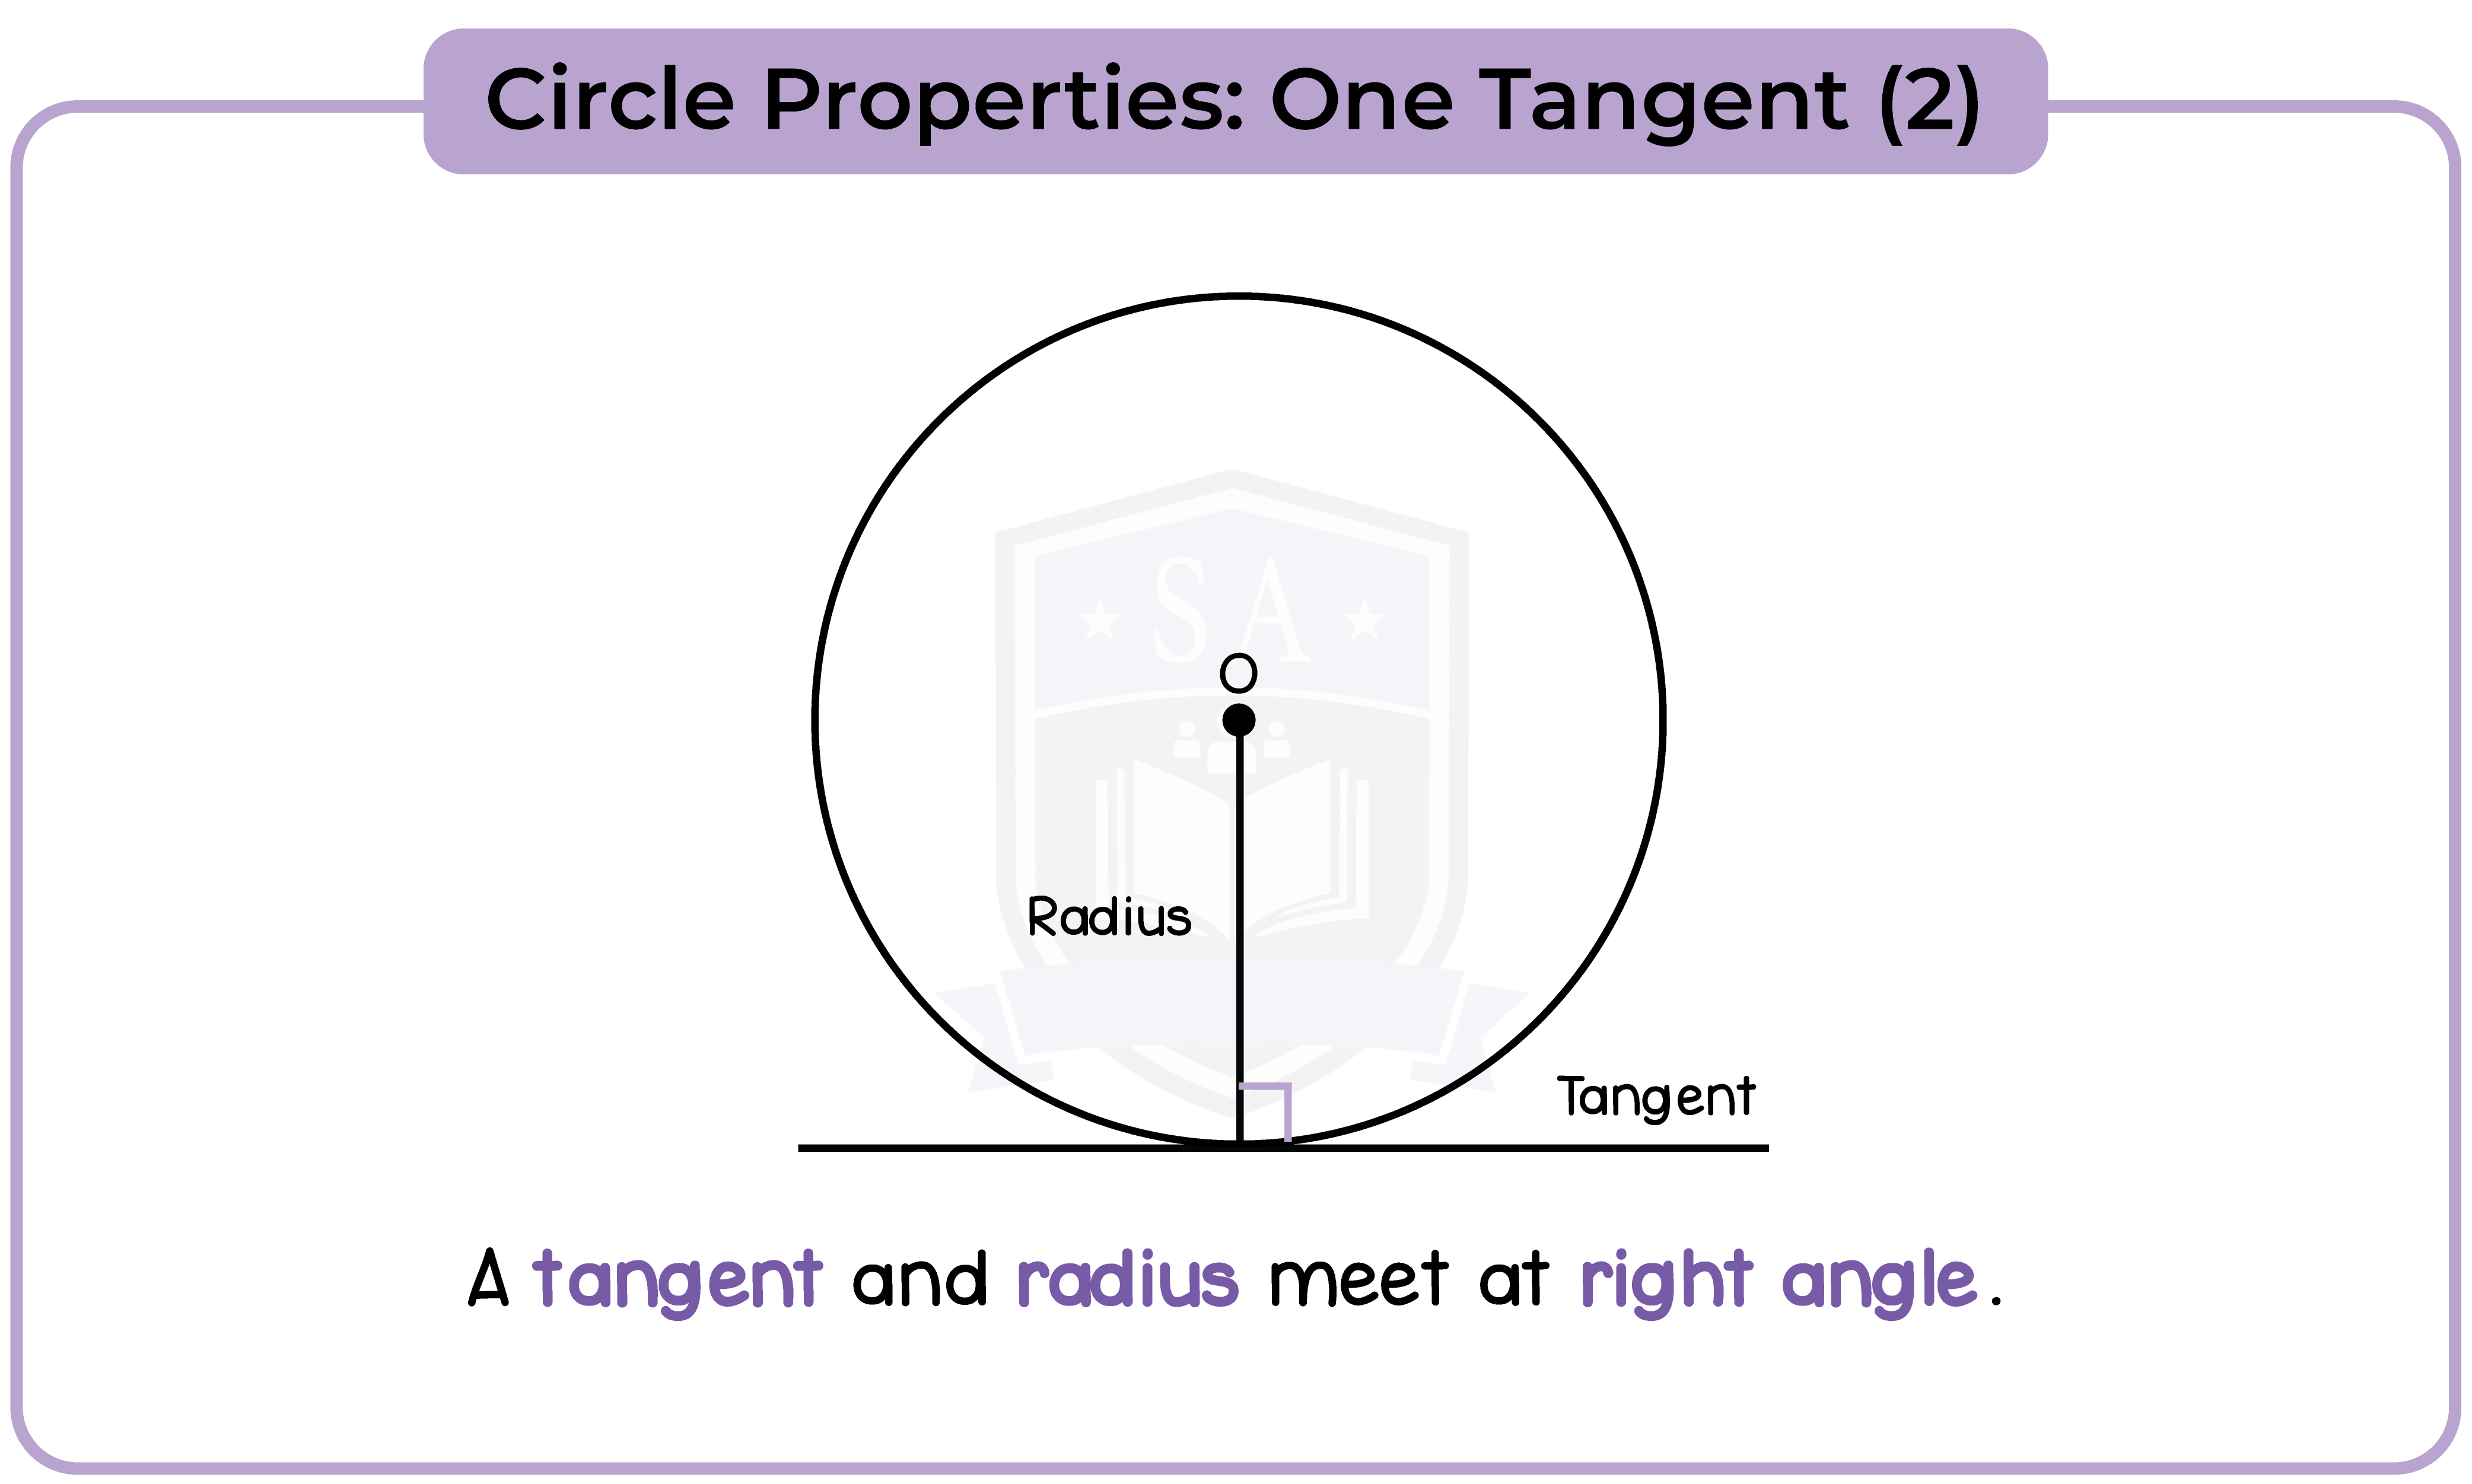 edexcel_igcse_mathematics a_topic 30_circle properties_002_Circle Properties: Chord (1)